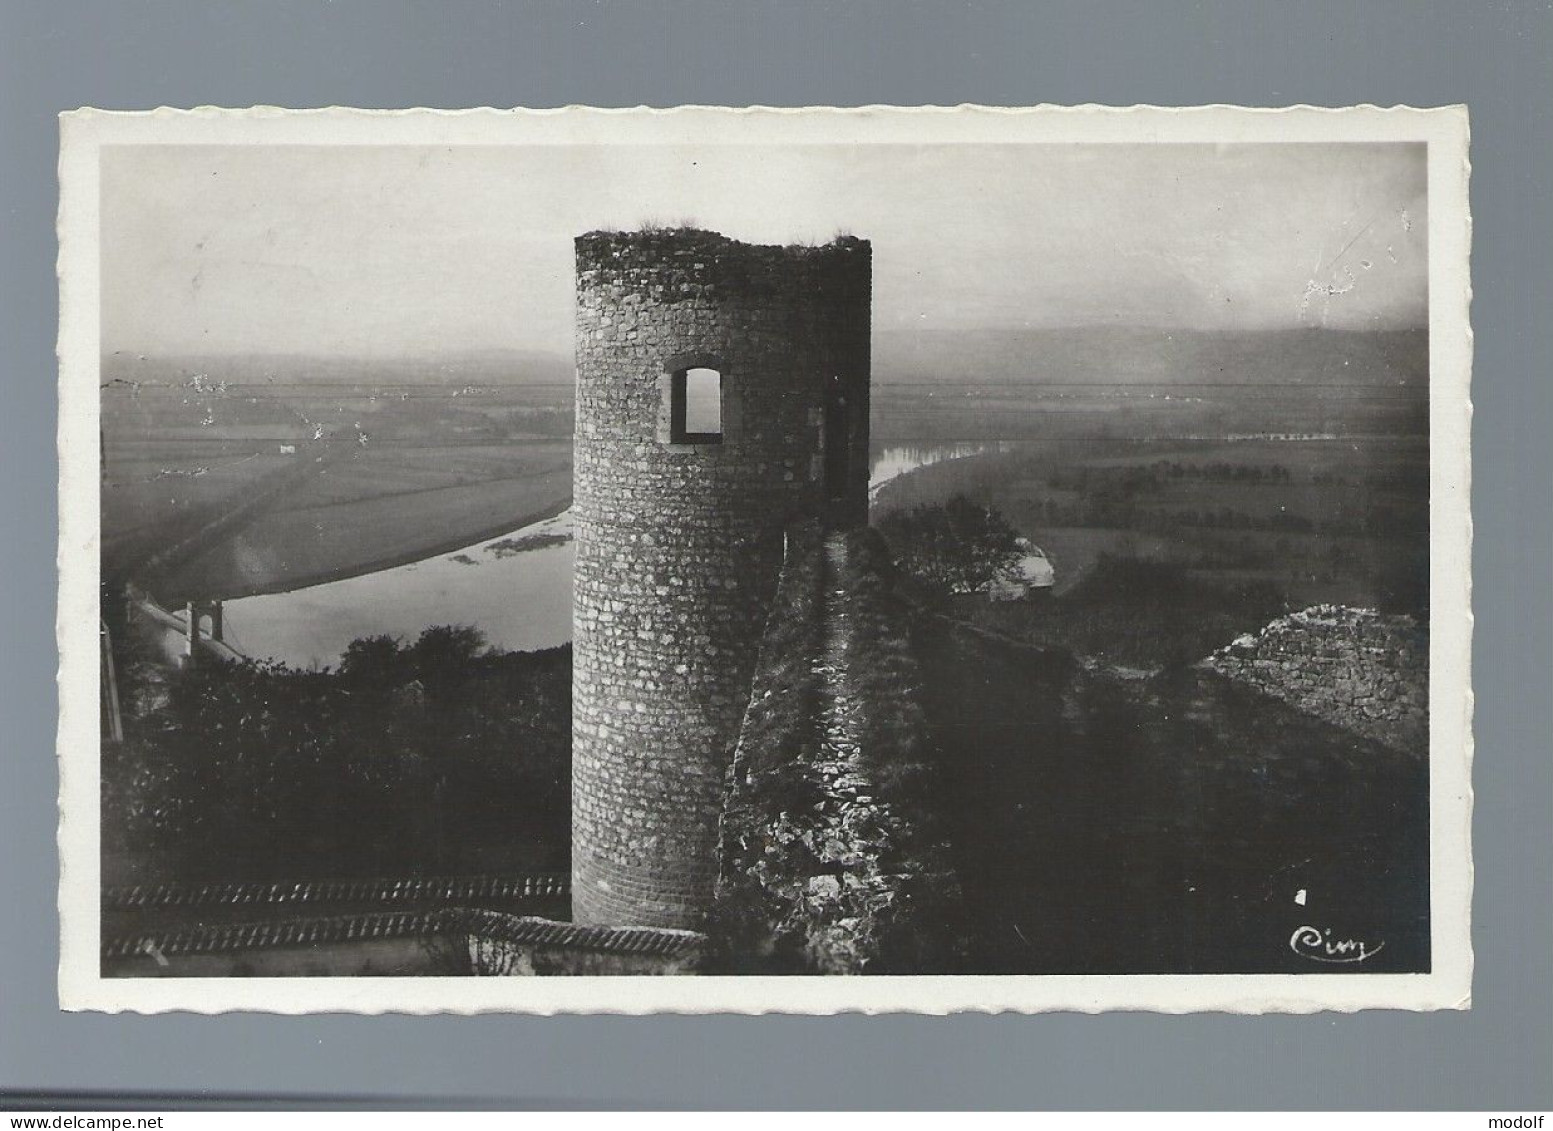 CPSM Dentelée - 01 - Trévoux - Ruines Du Château Féodal - La Saône Et Le Pont - Circulée En 1955 - Trévoux